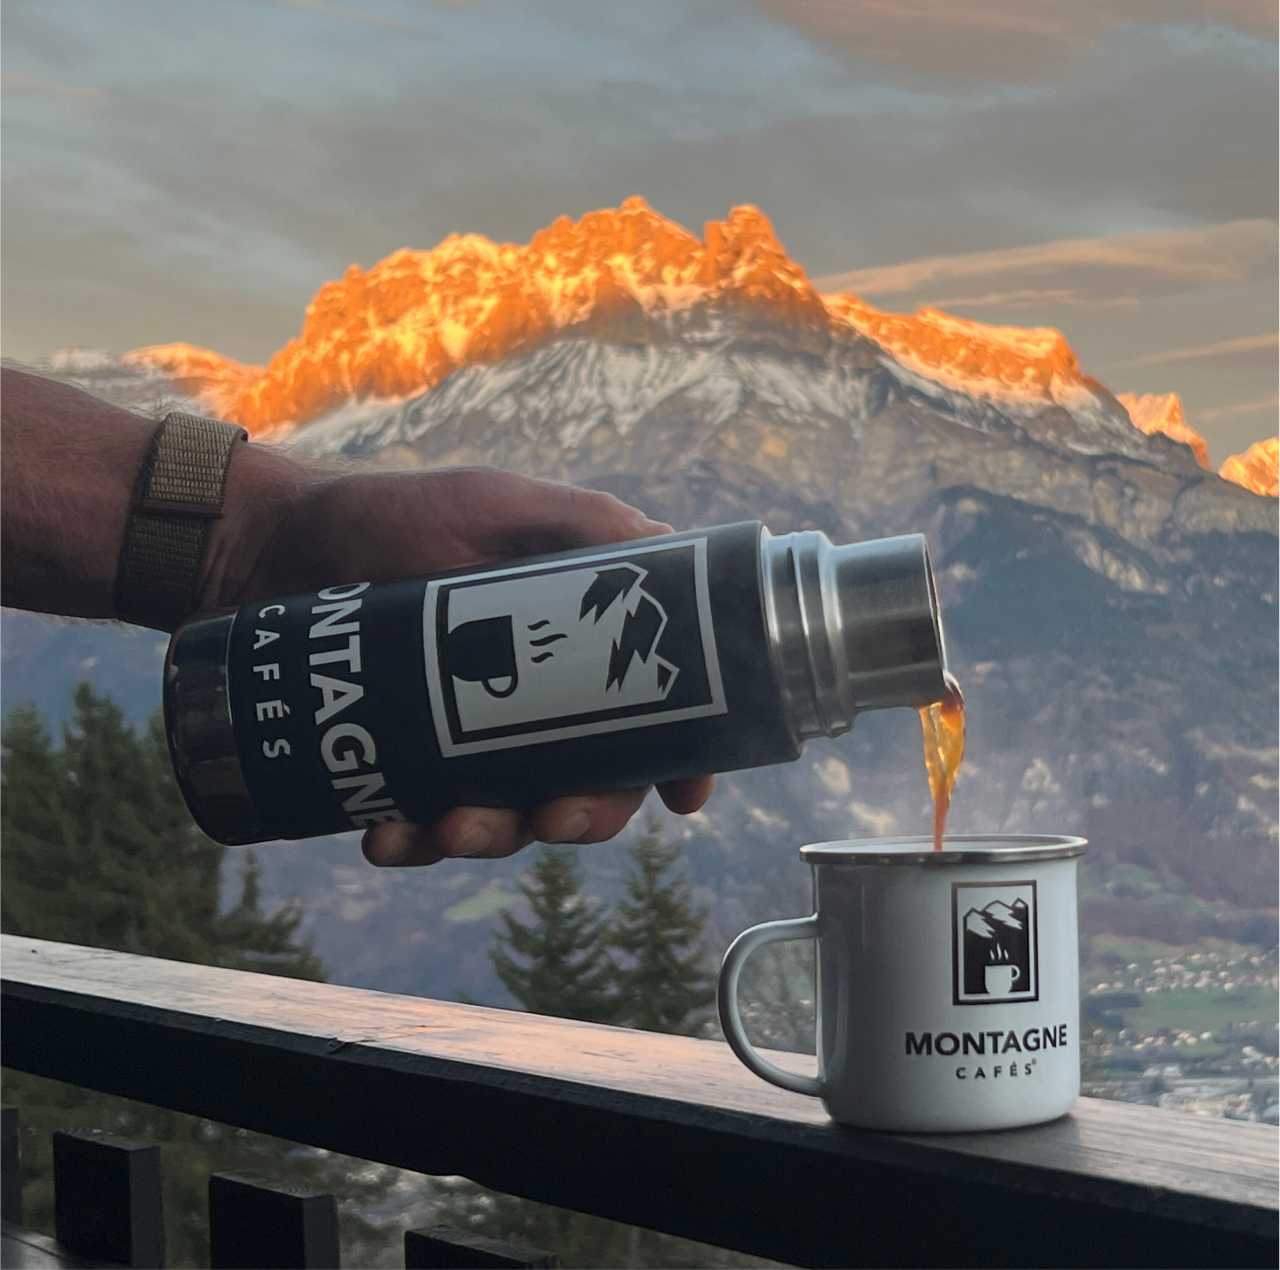 Montagne café